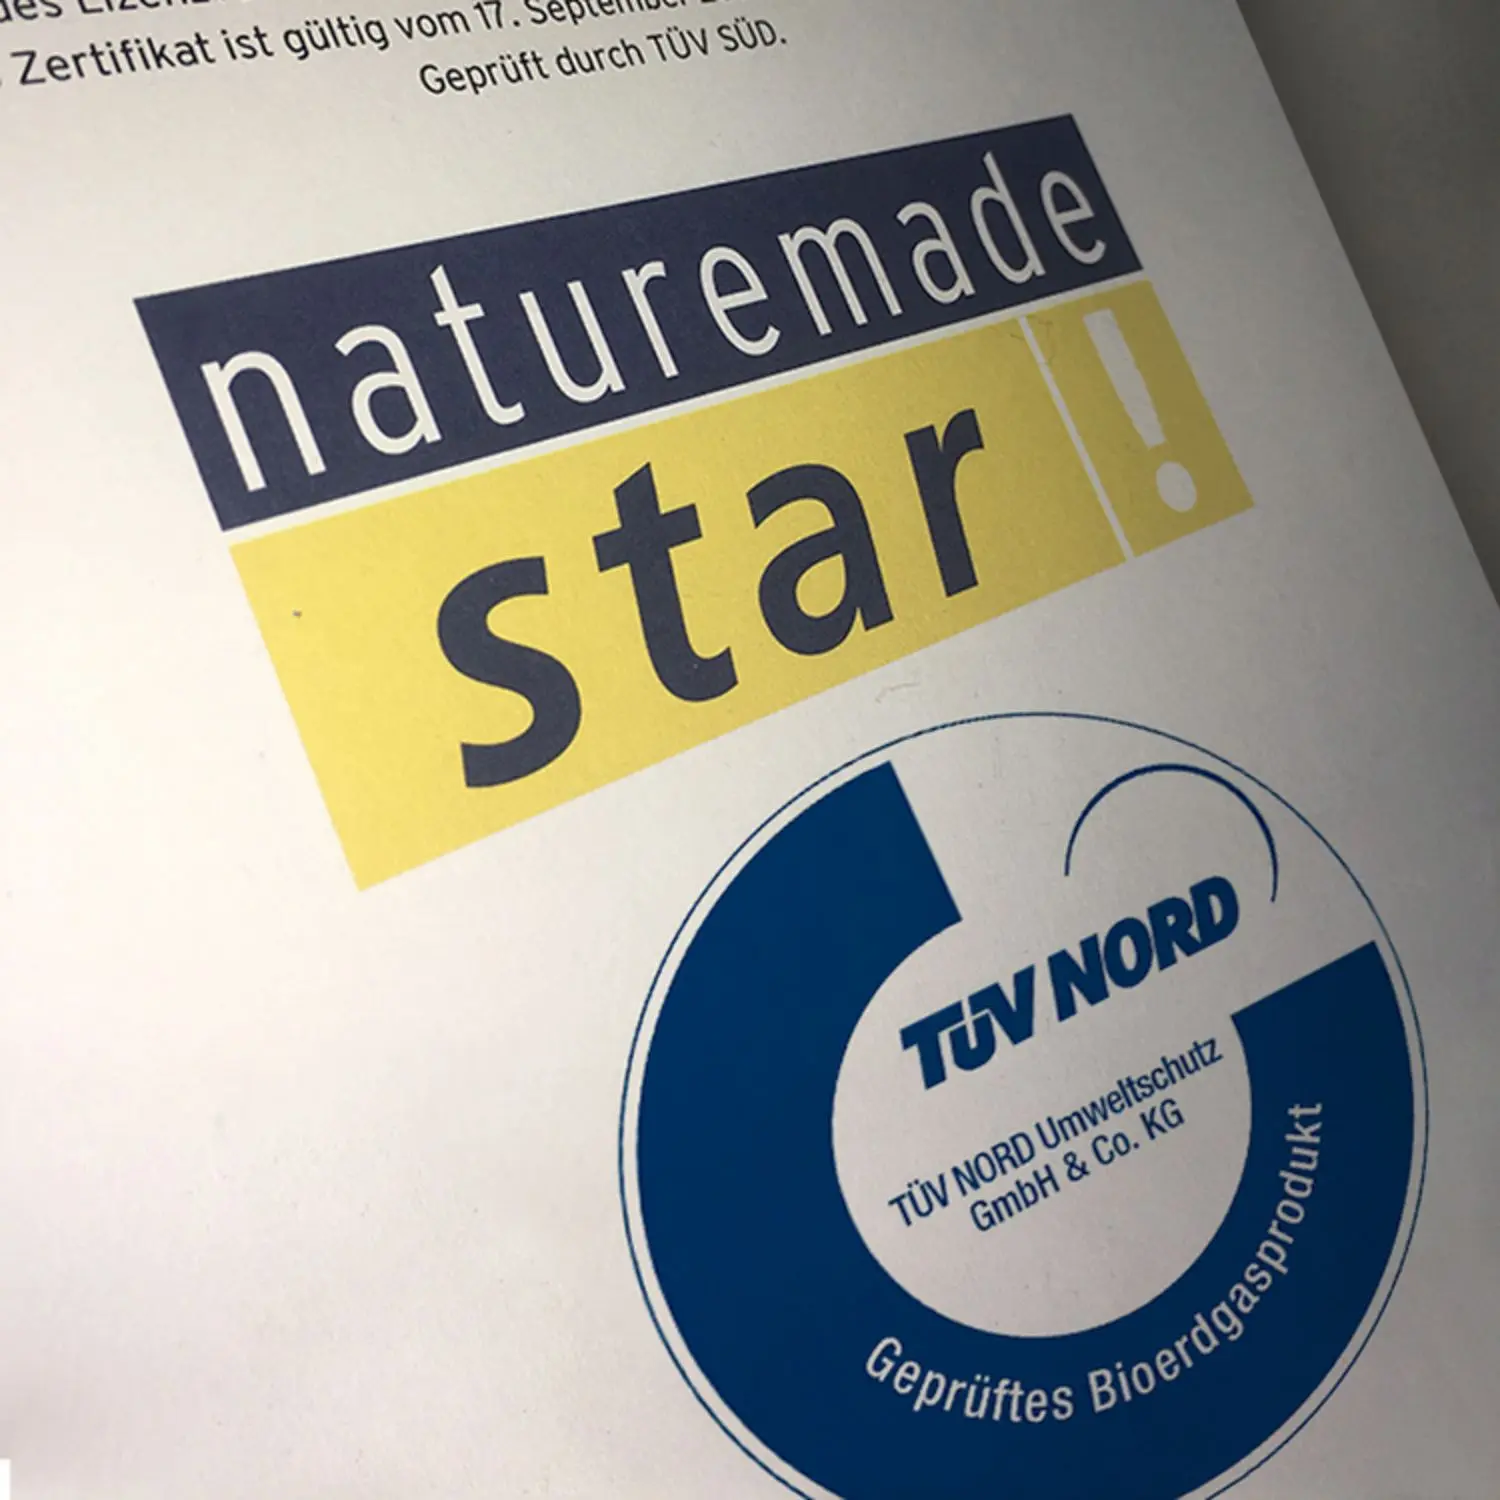 Siegel Naturemade Star und TÜV Nord